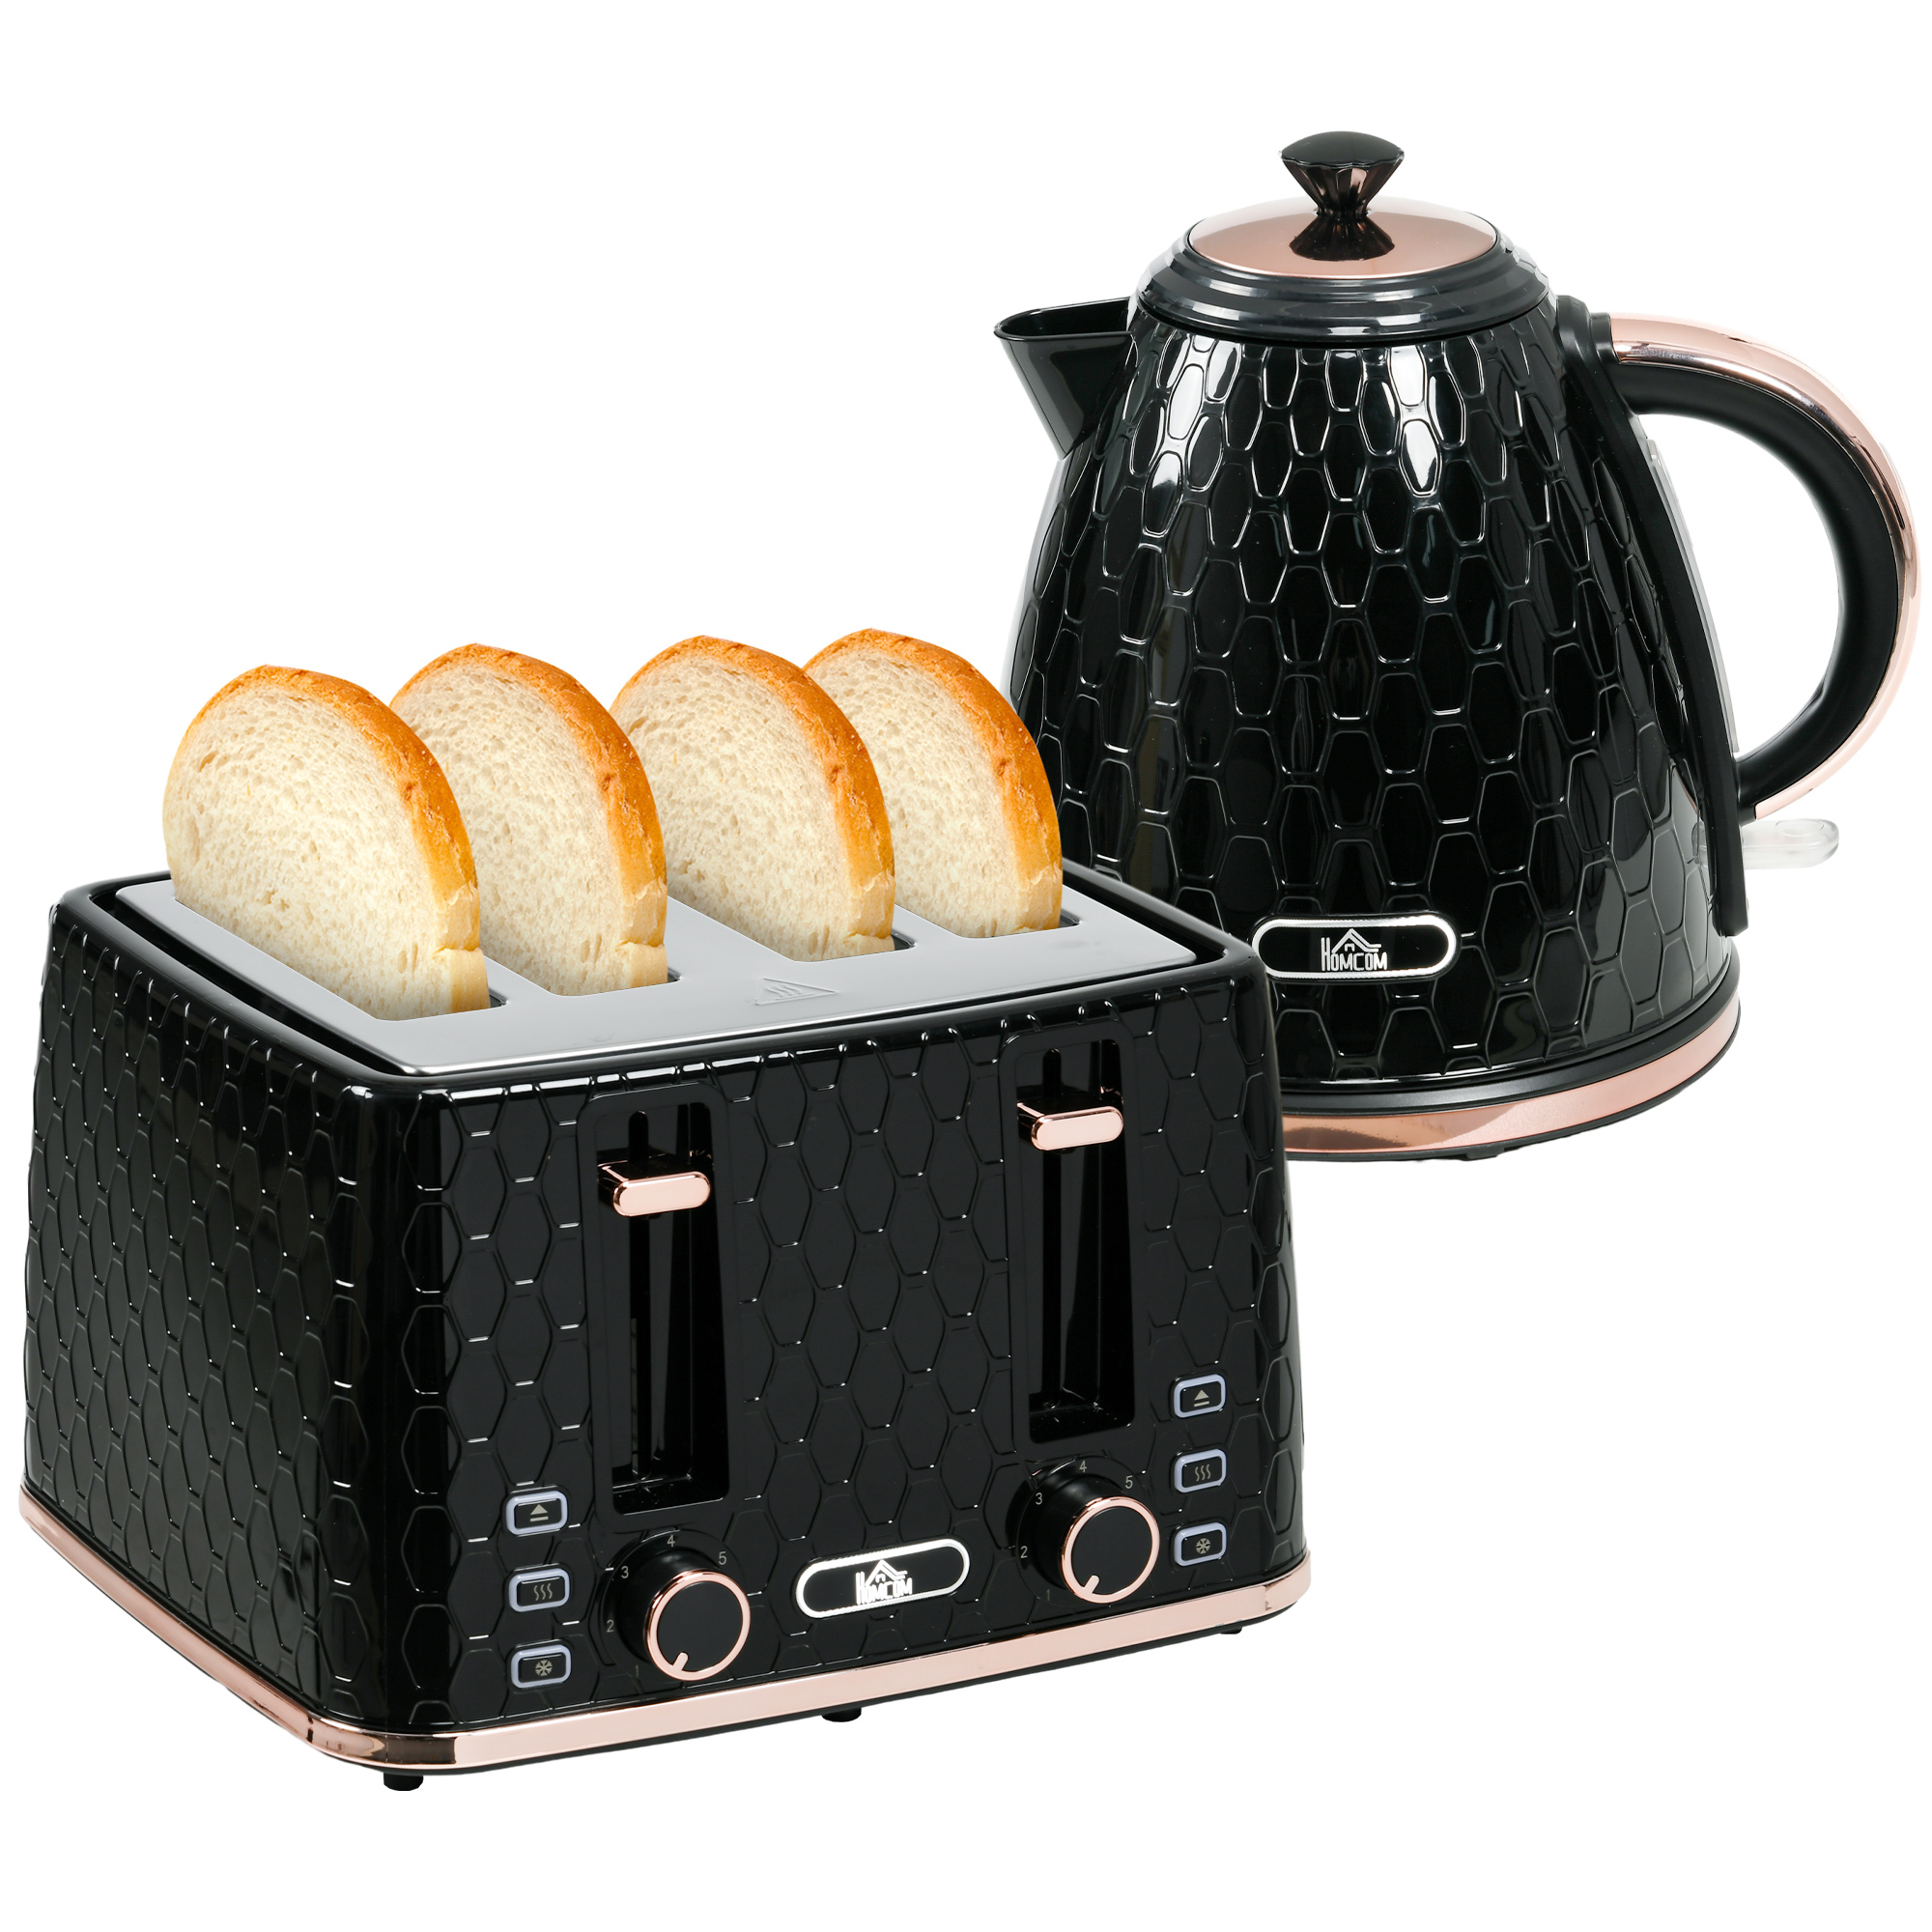 HOMCOM Kettle and Toaster Set 1.7L Fast Boil Kettle & 2 Slice